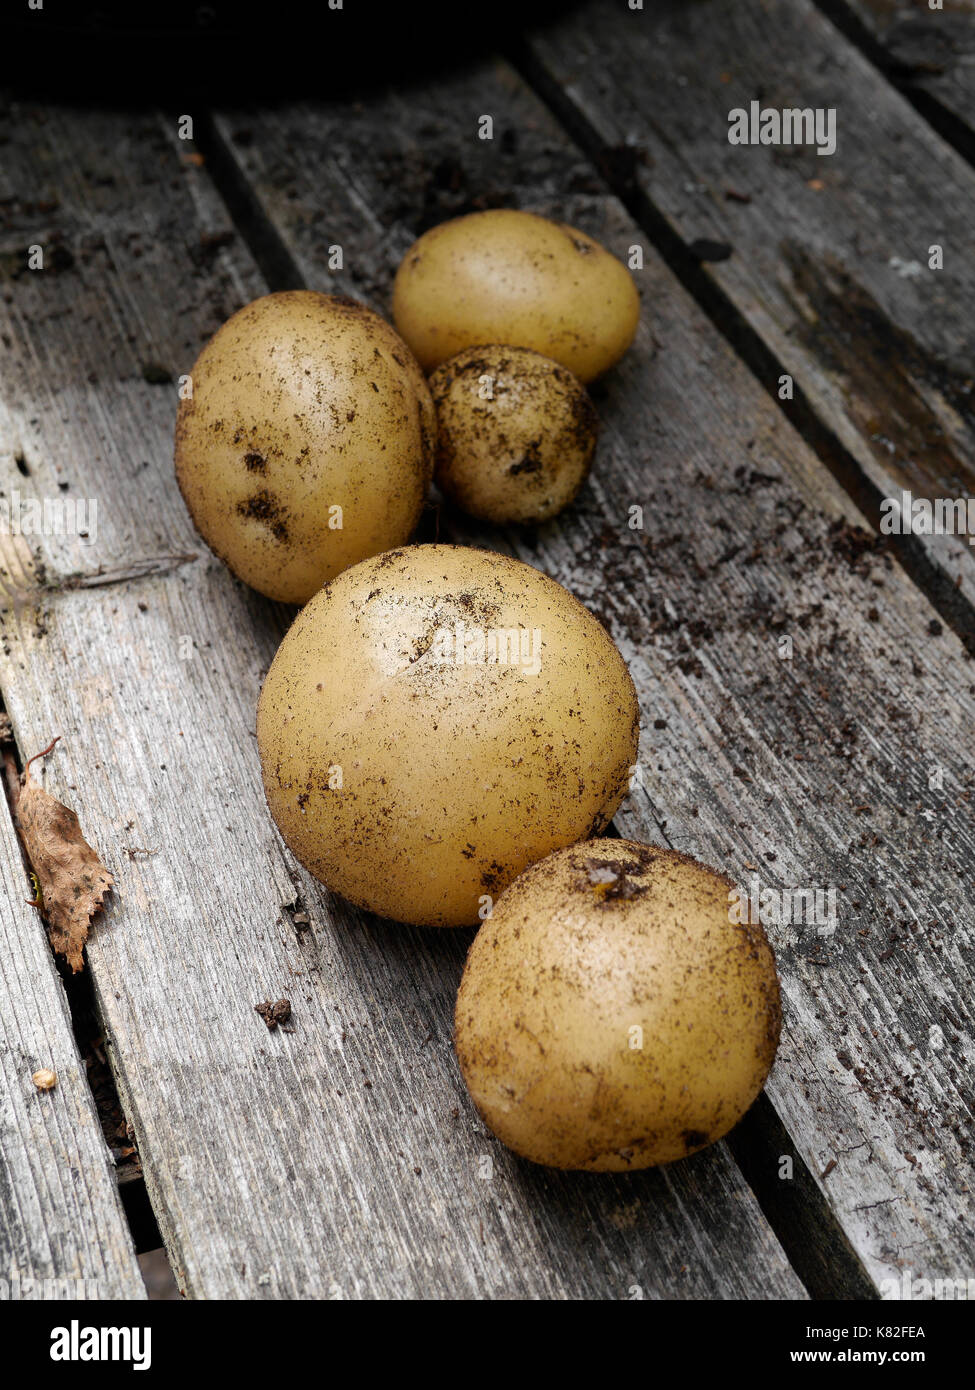 Appena raccolto di patate, in Räfsnäs, appena fuori di Gräddö, Rådmansö, Roslagen - la parte settentrionale dell'arcipelago di Stoccolma, Svezia. Foto Stock